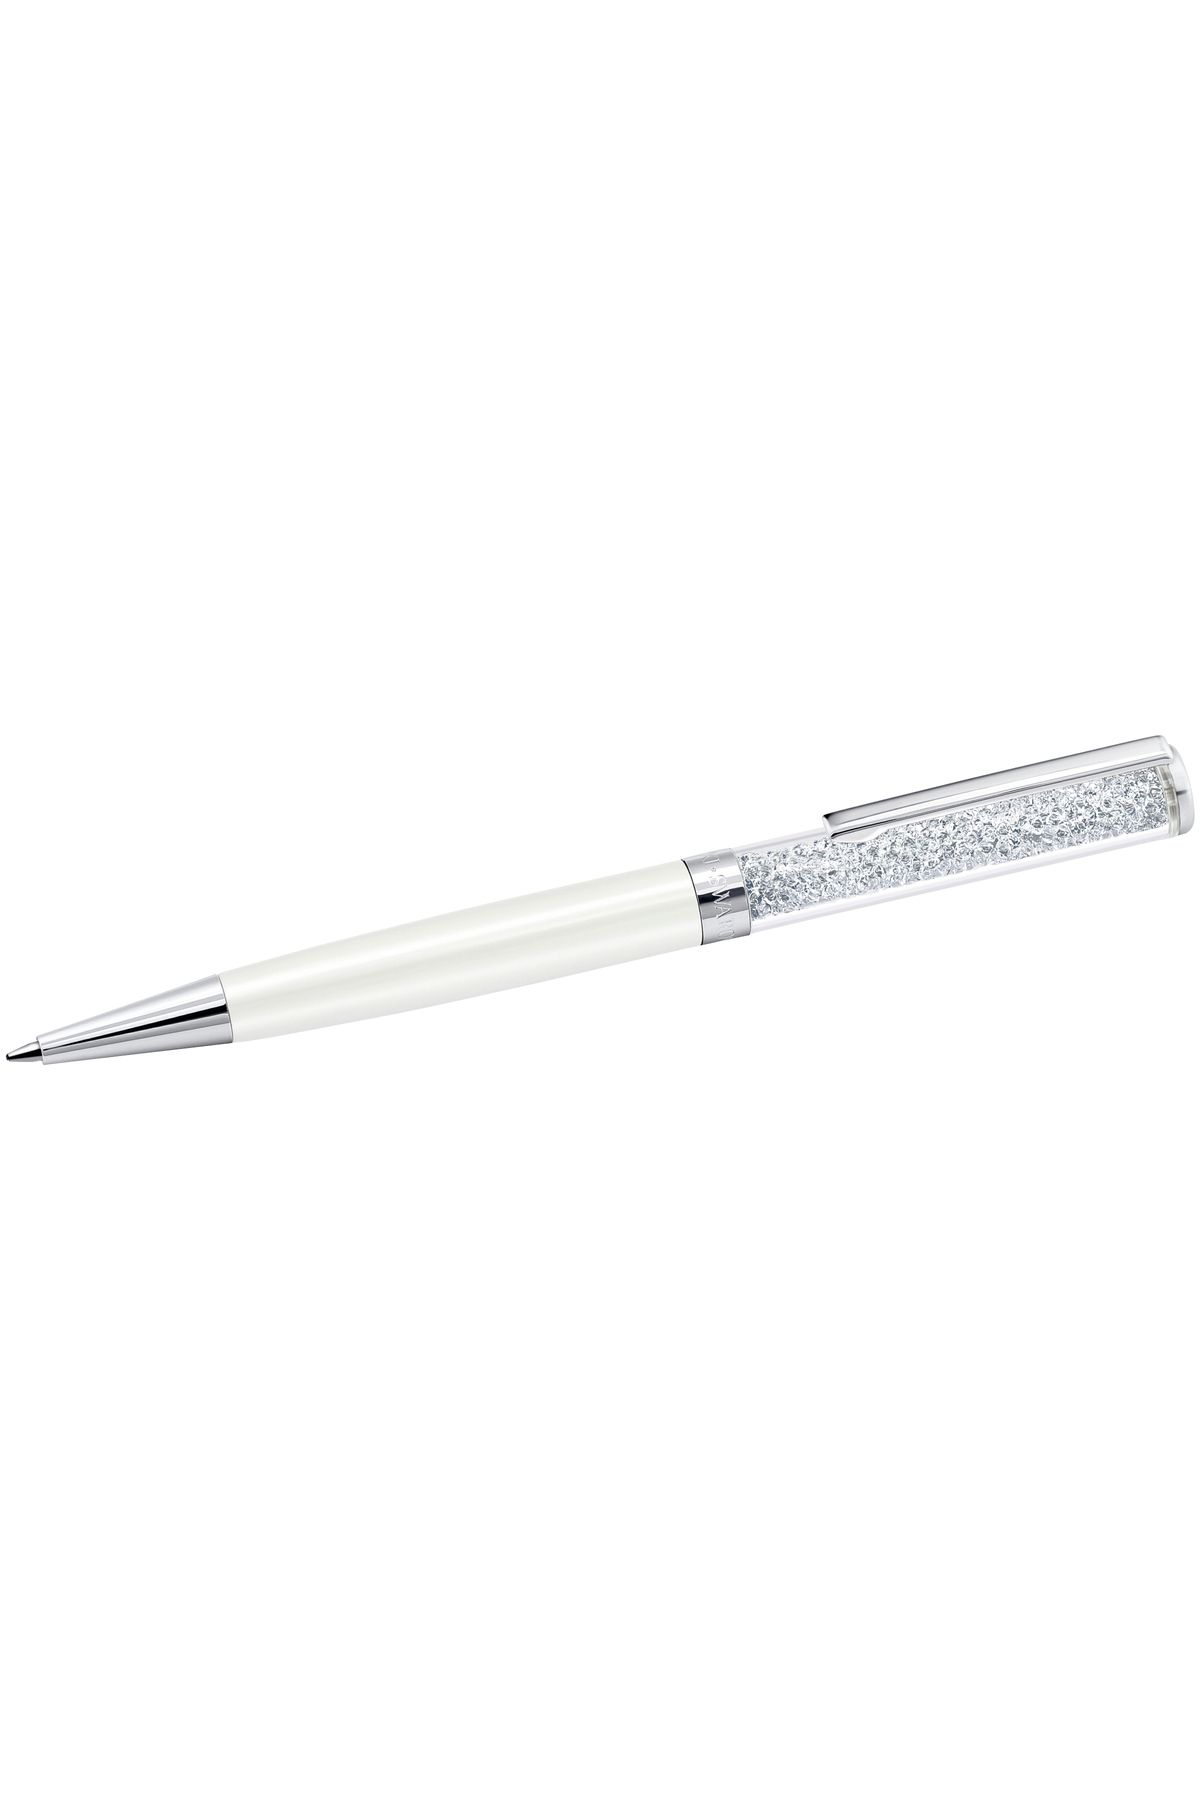 Swarovski 5224392 Swarovski Kalem Crystalline Bp Pen - White